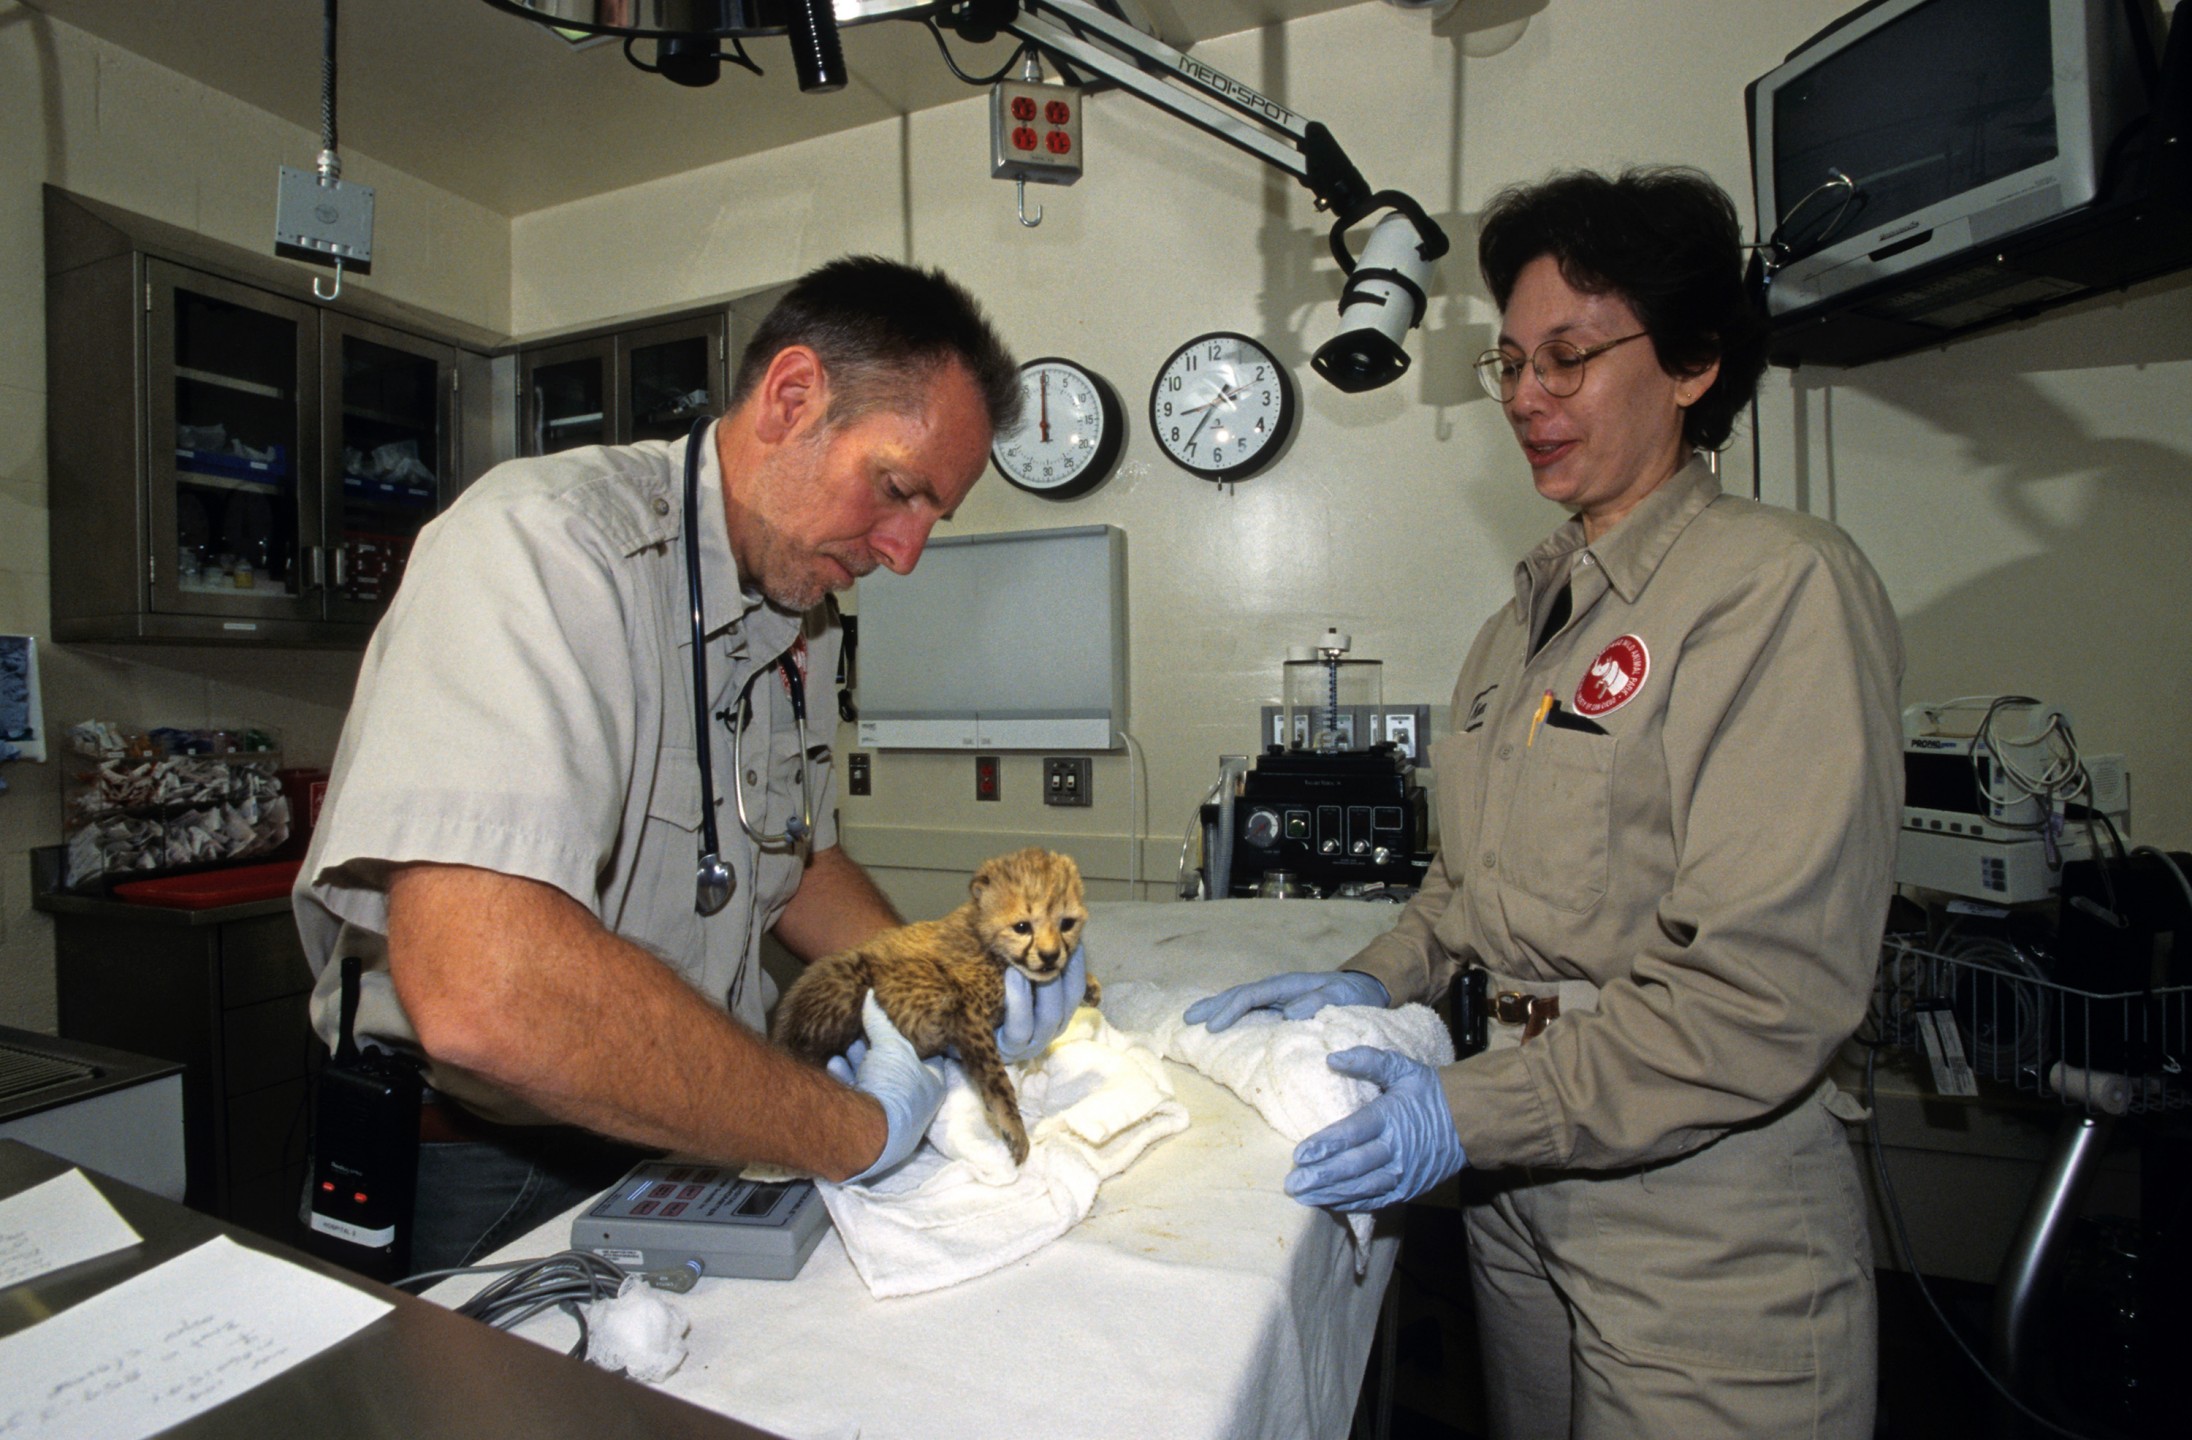 Cheetah cub exam at the Paul Harter Veterinary Medical Center